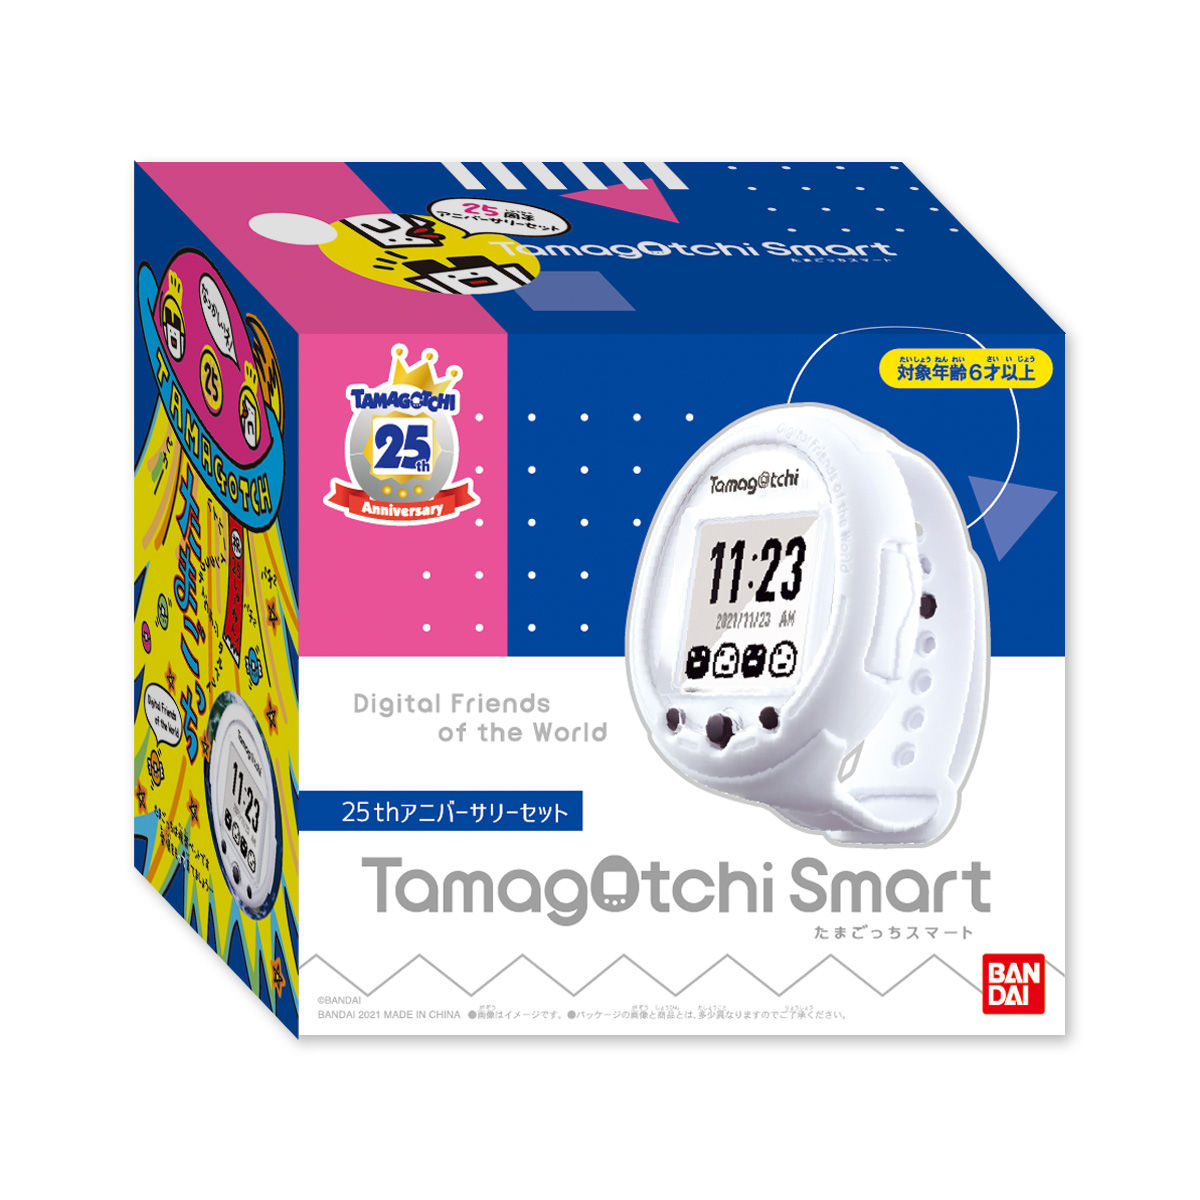 【抽選販売】Tamagotchi Smart 25th アニバーサリーセット| プレミアムバンダイ